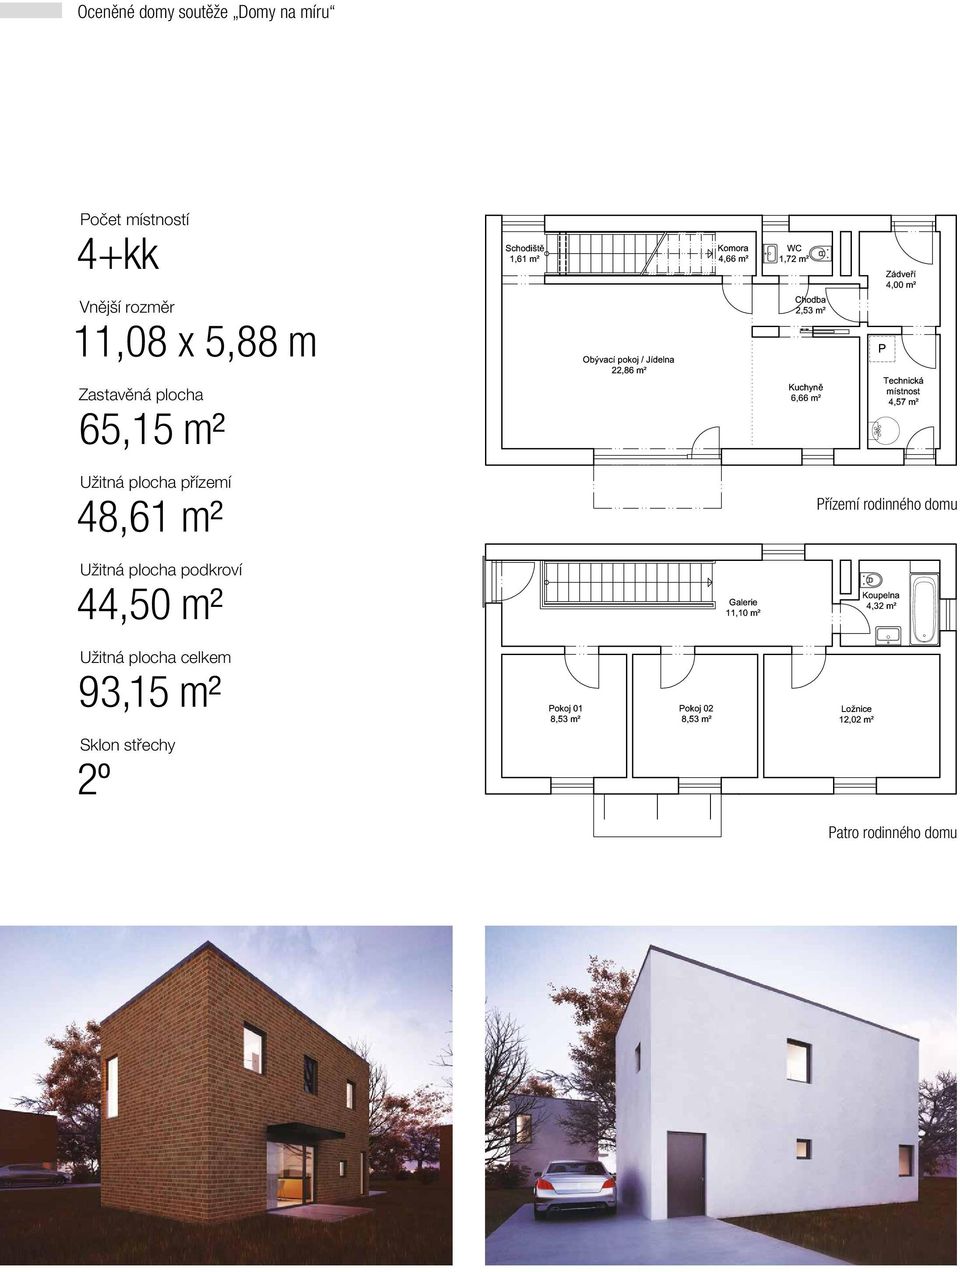 přízemí 48,61 m² Užitná plocha podkroví 44,50 m² Užitná plocha